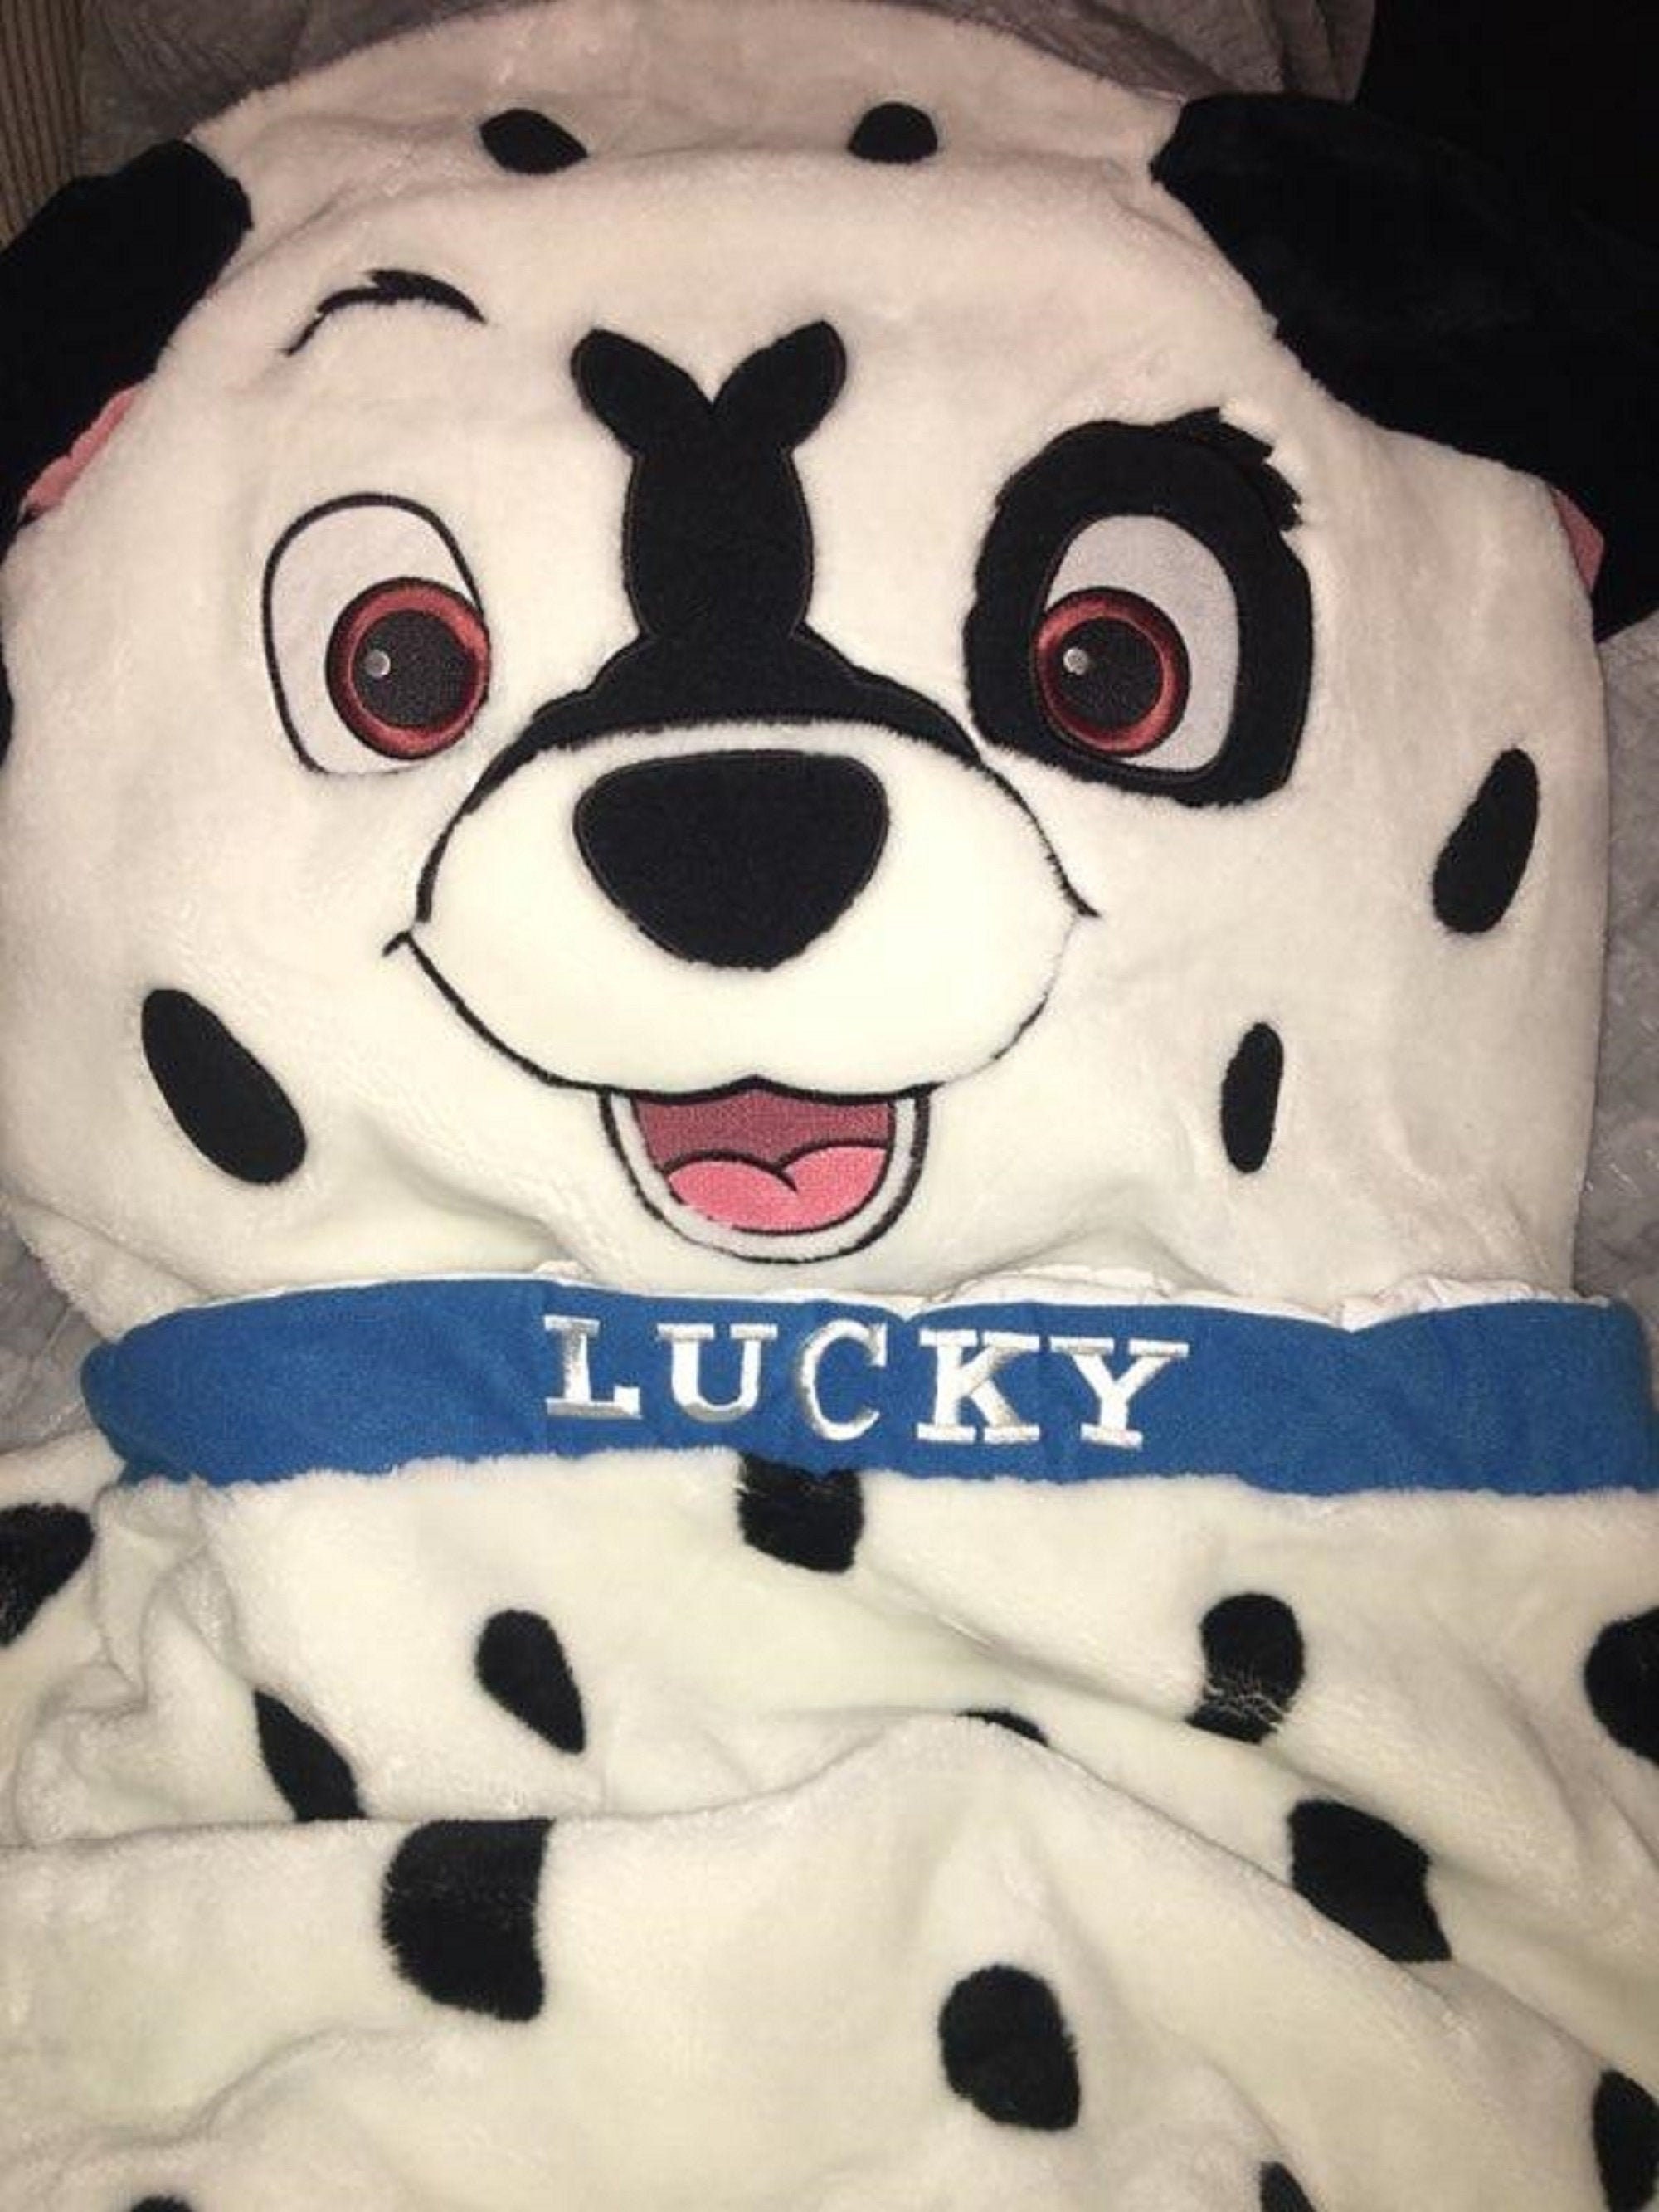 THM Bag Accessories - 💕 Cute 101 Dalmatians pillows for a Louis